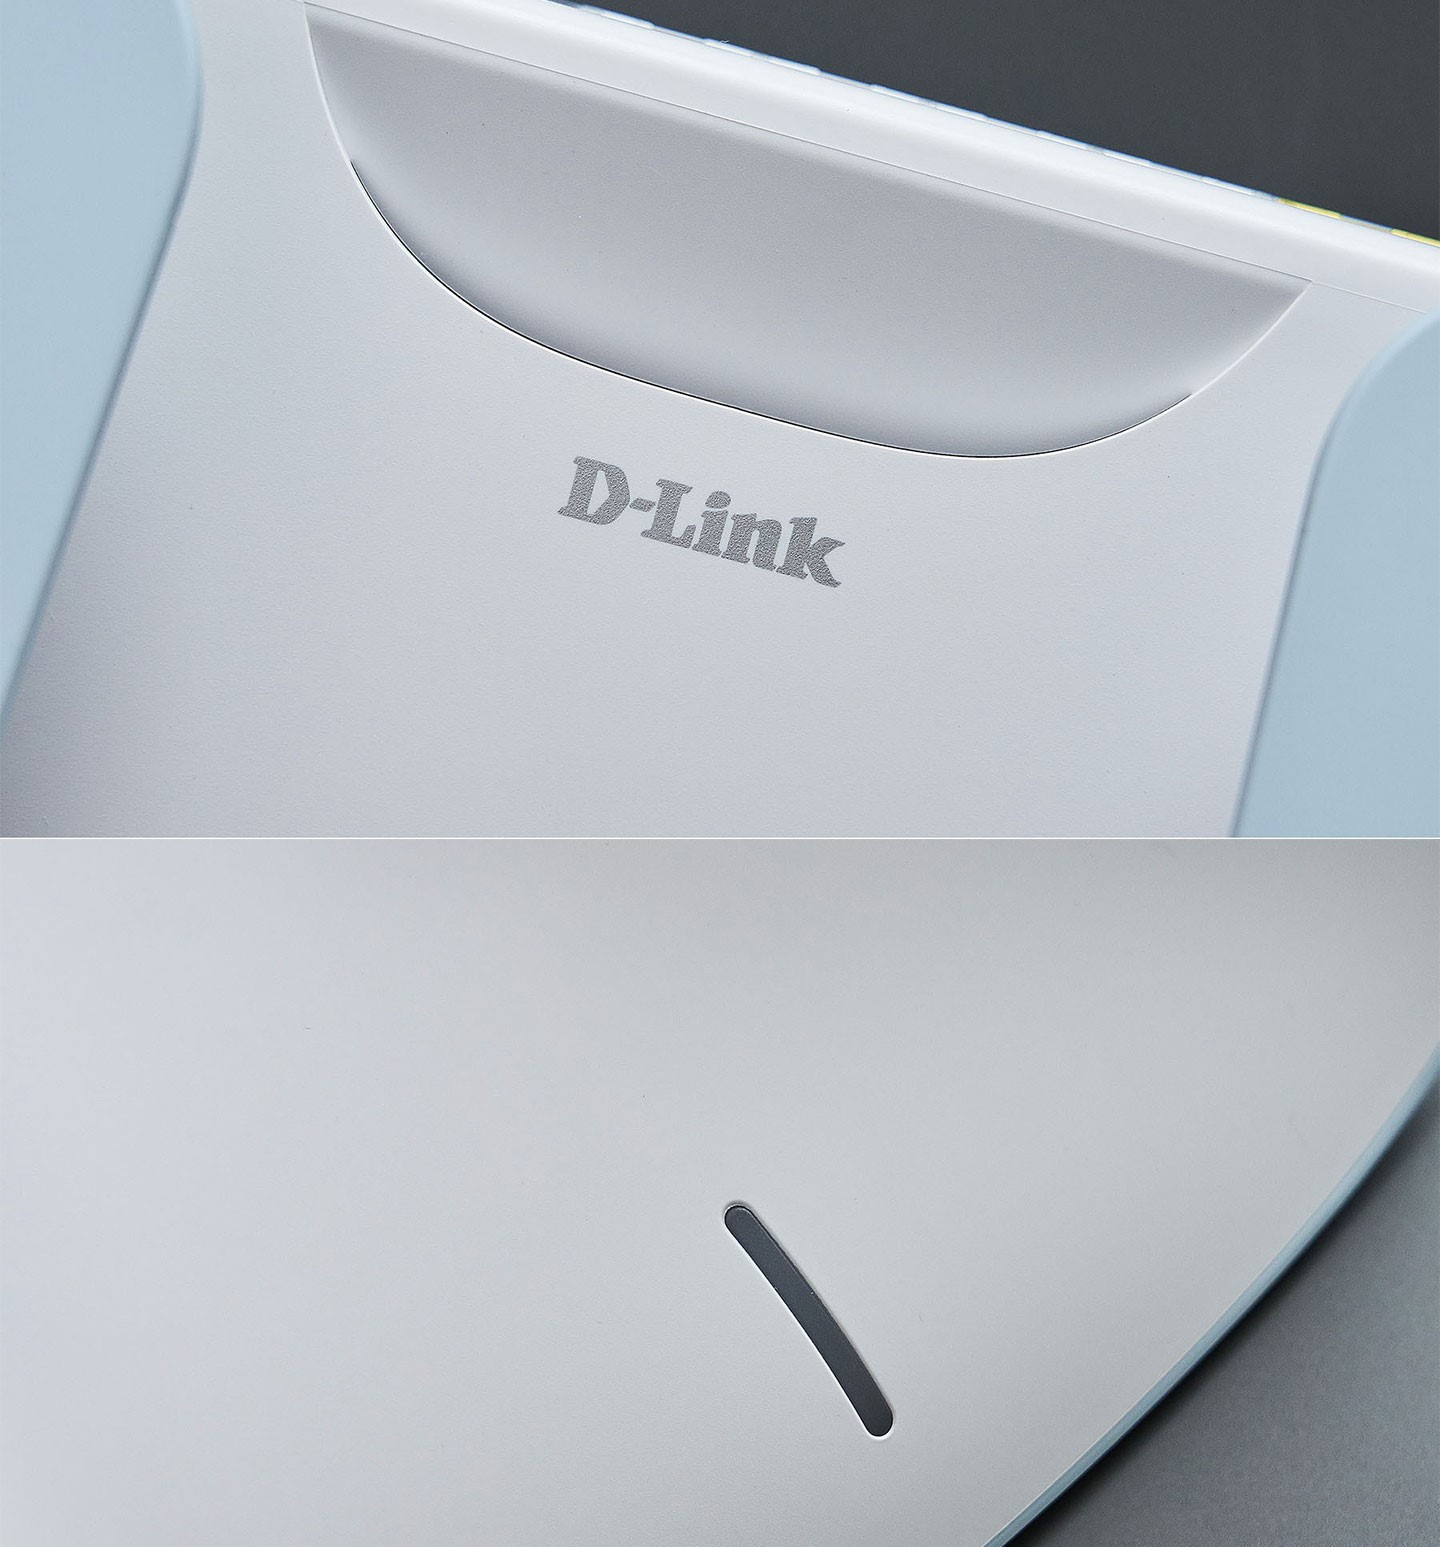 機身上緣處有一道類似微笑曲線的散熱微開口，配 D-Link Logo 看起來相當有質感，下方則簡單規劃了縱向線條造型的指示燈，很好的呈現了何謂簡約美計。